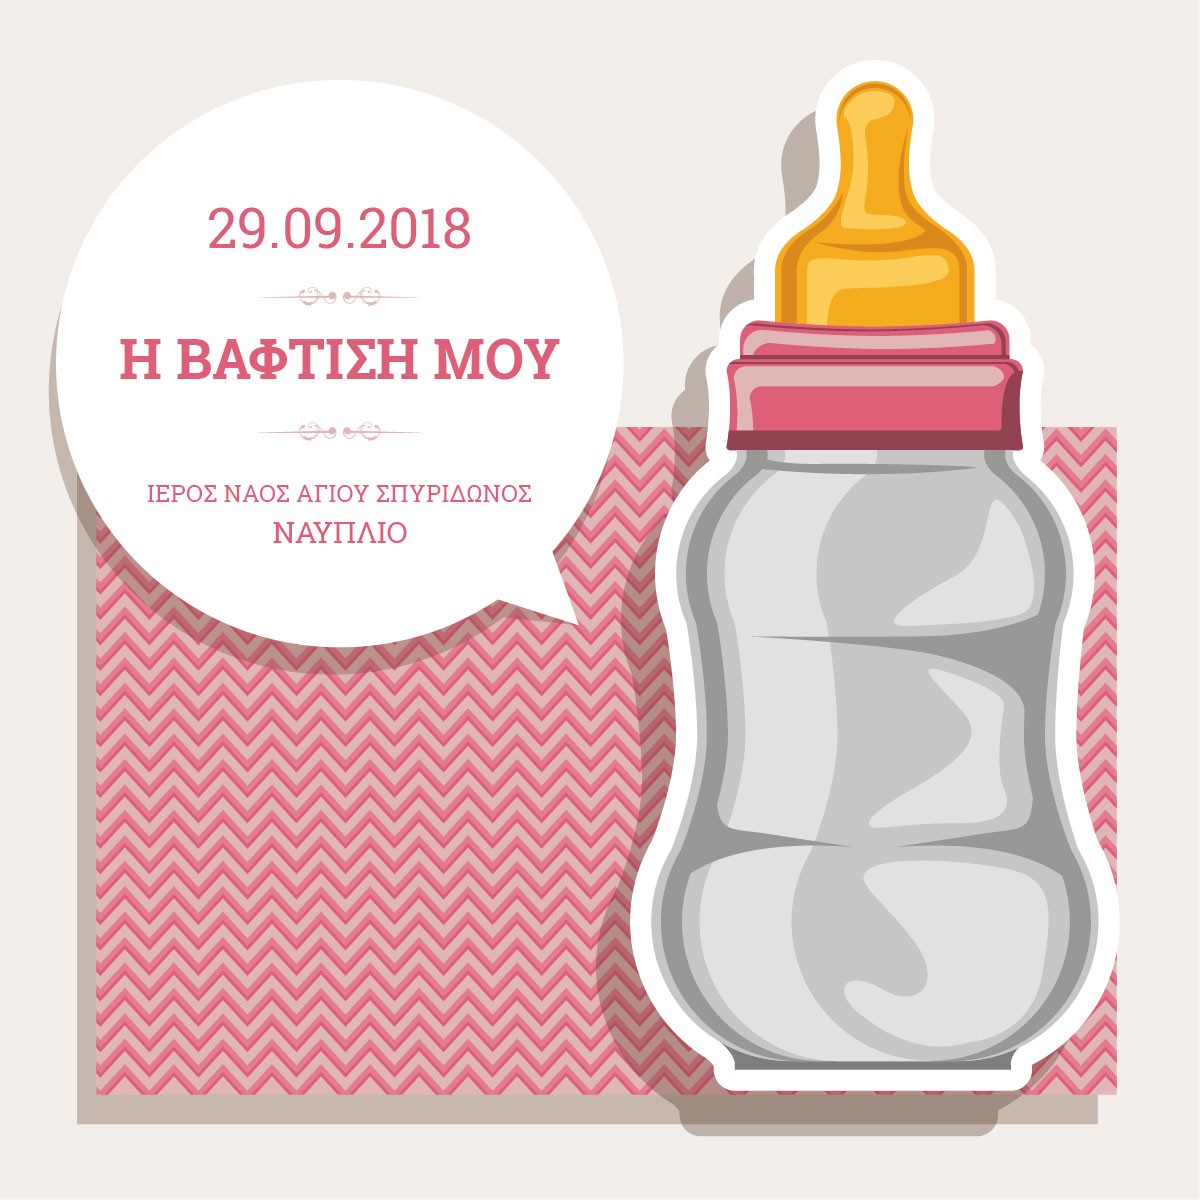 Προσκλητήριο Βάφτισης Μπιμπερό με κάλεσμα